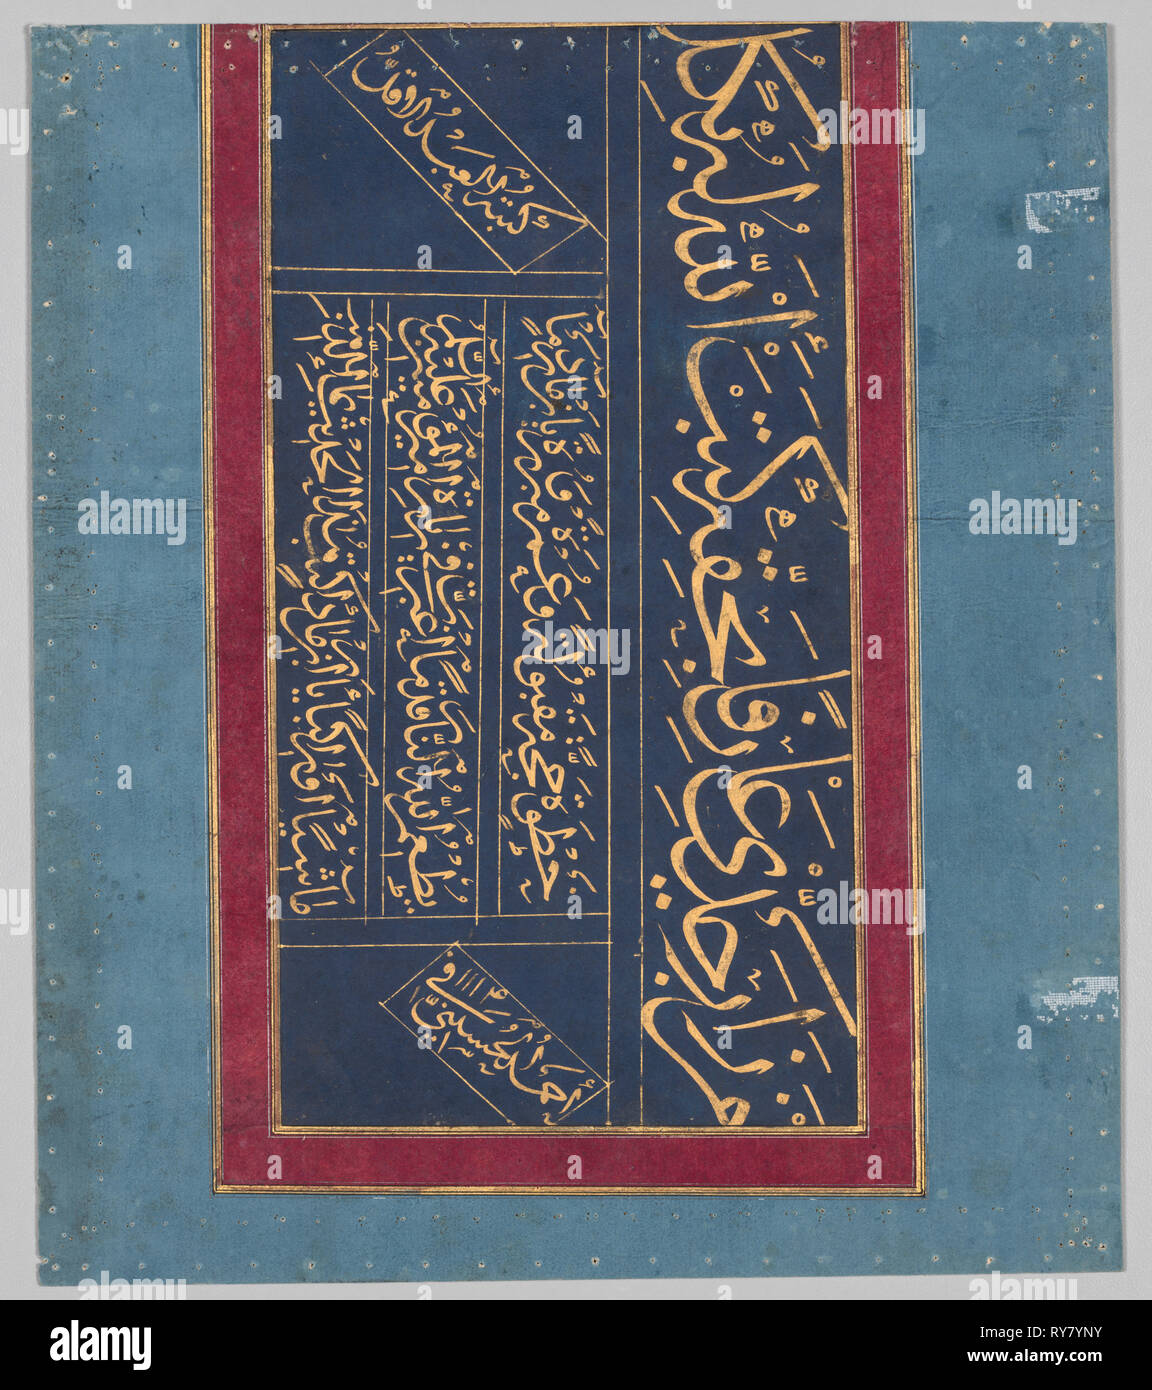 La calligrafia, 1702. Ahmad al-Husaini. Oro su carta blu, quattro linee di calligrafia thuluth (verso); pagina: 28,2 x 24,1 cm (11 1/8 x 9 1/2 in Foto Stock